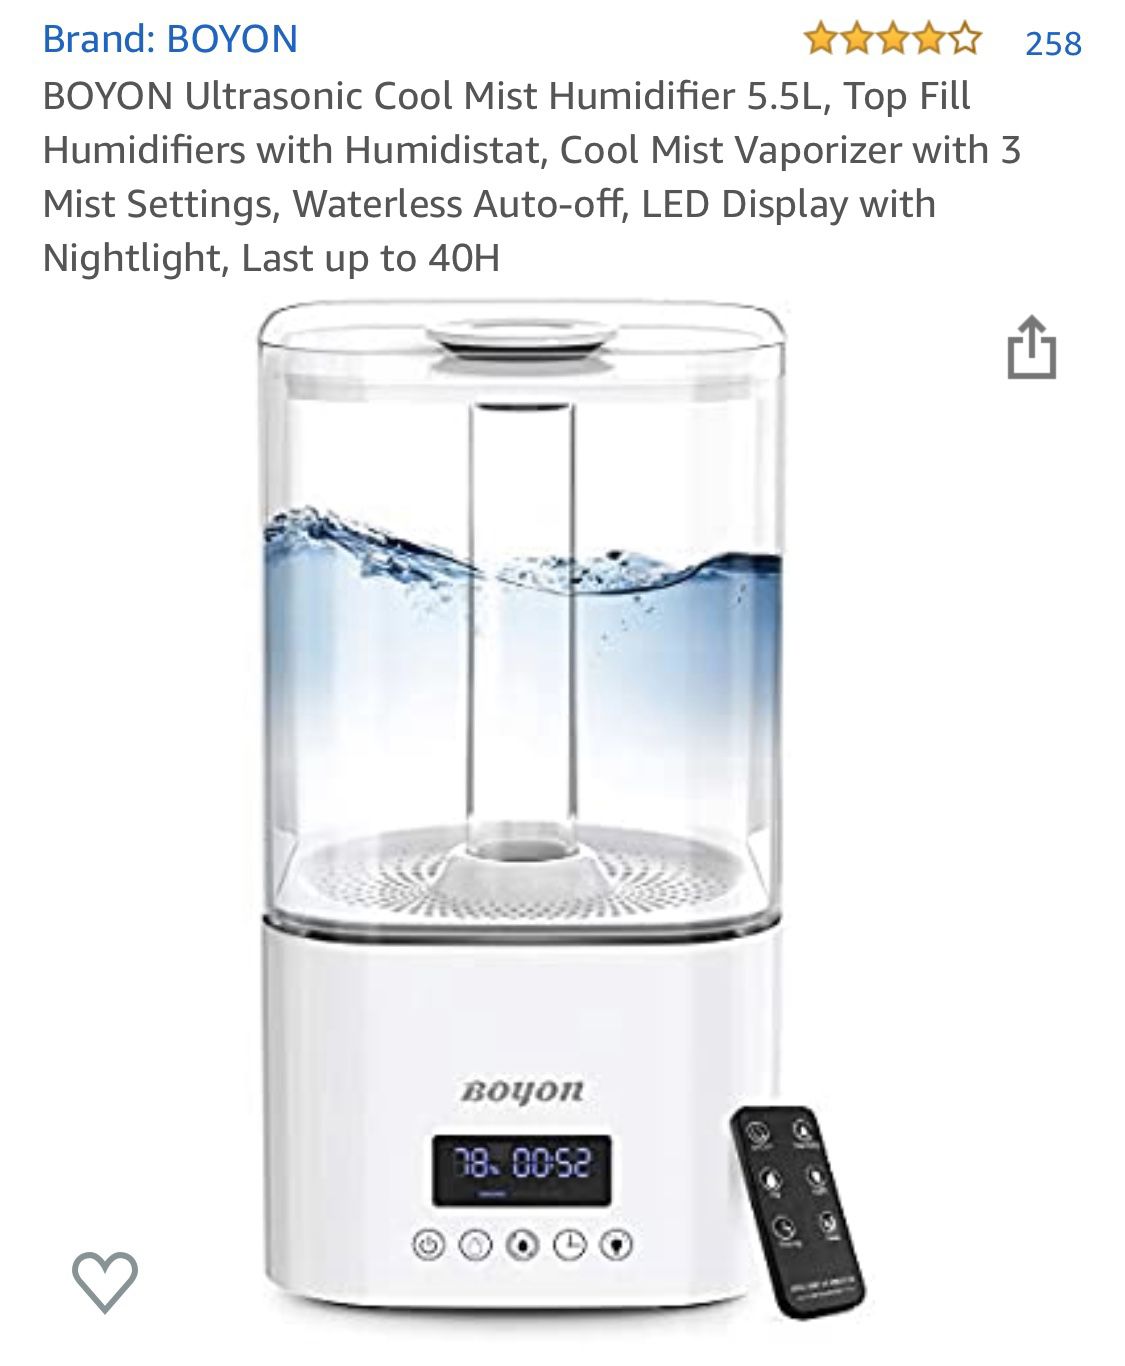 Ultrasonic Cool Mist Humidifier 5.5L w LED Display & Night Light